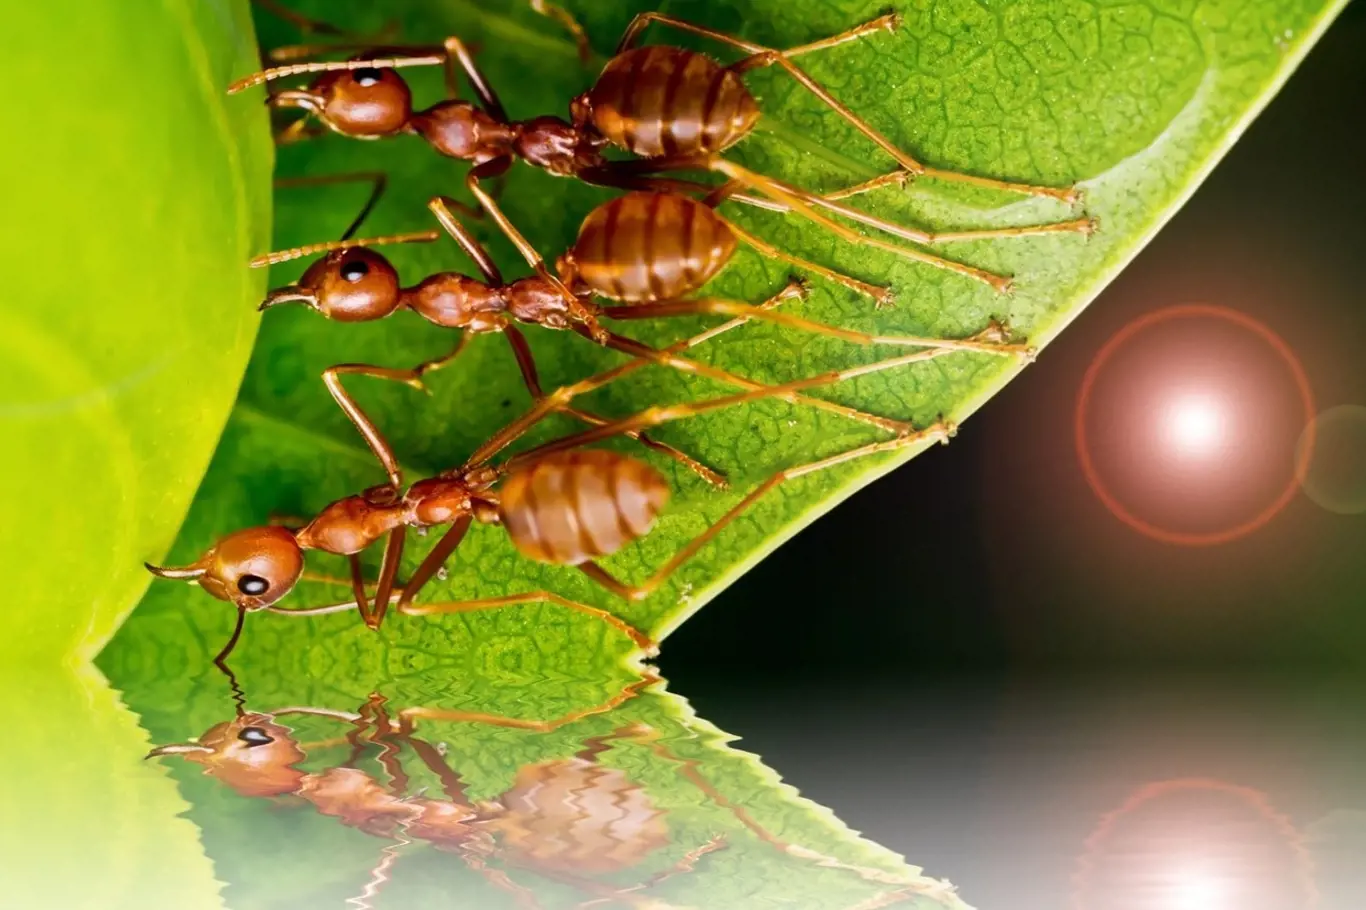 Mravenci občas napadají naše domácnosti i zahradu